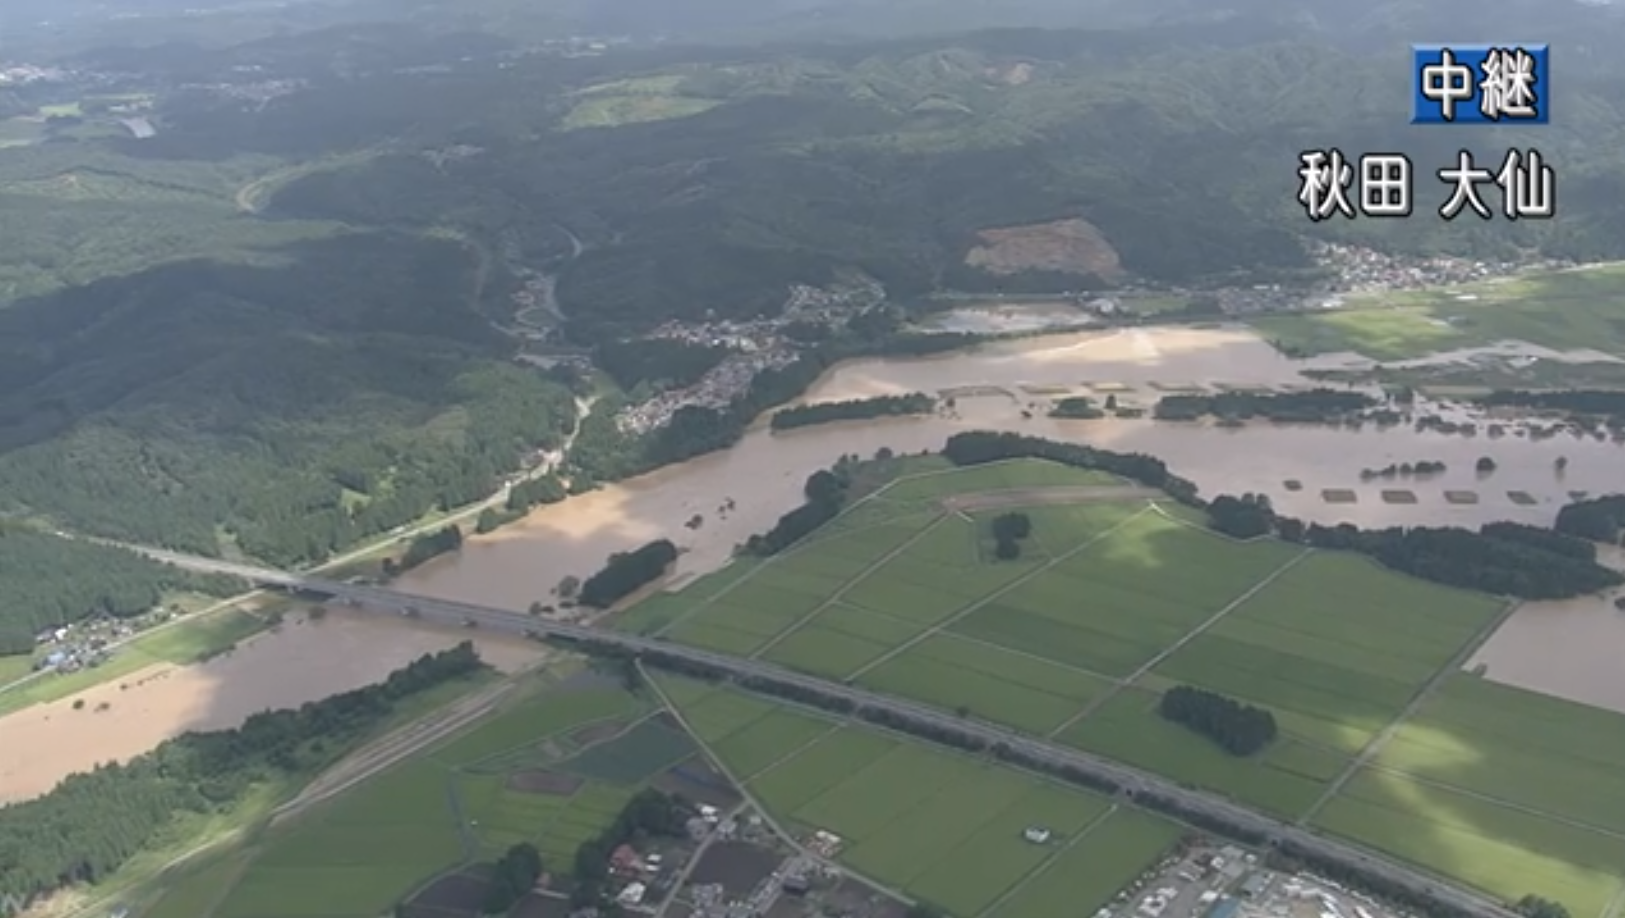 【期間限定】NHK雄物川氾濫ライブカメラ(秋田県大仙市)